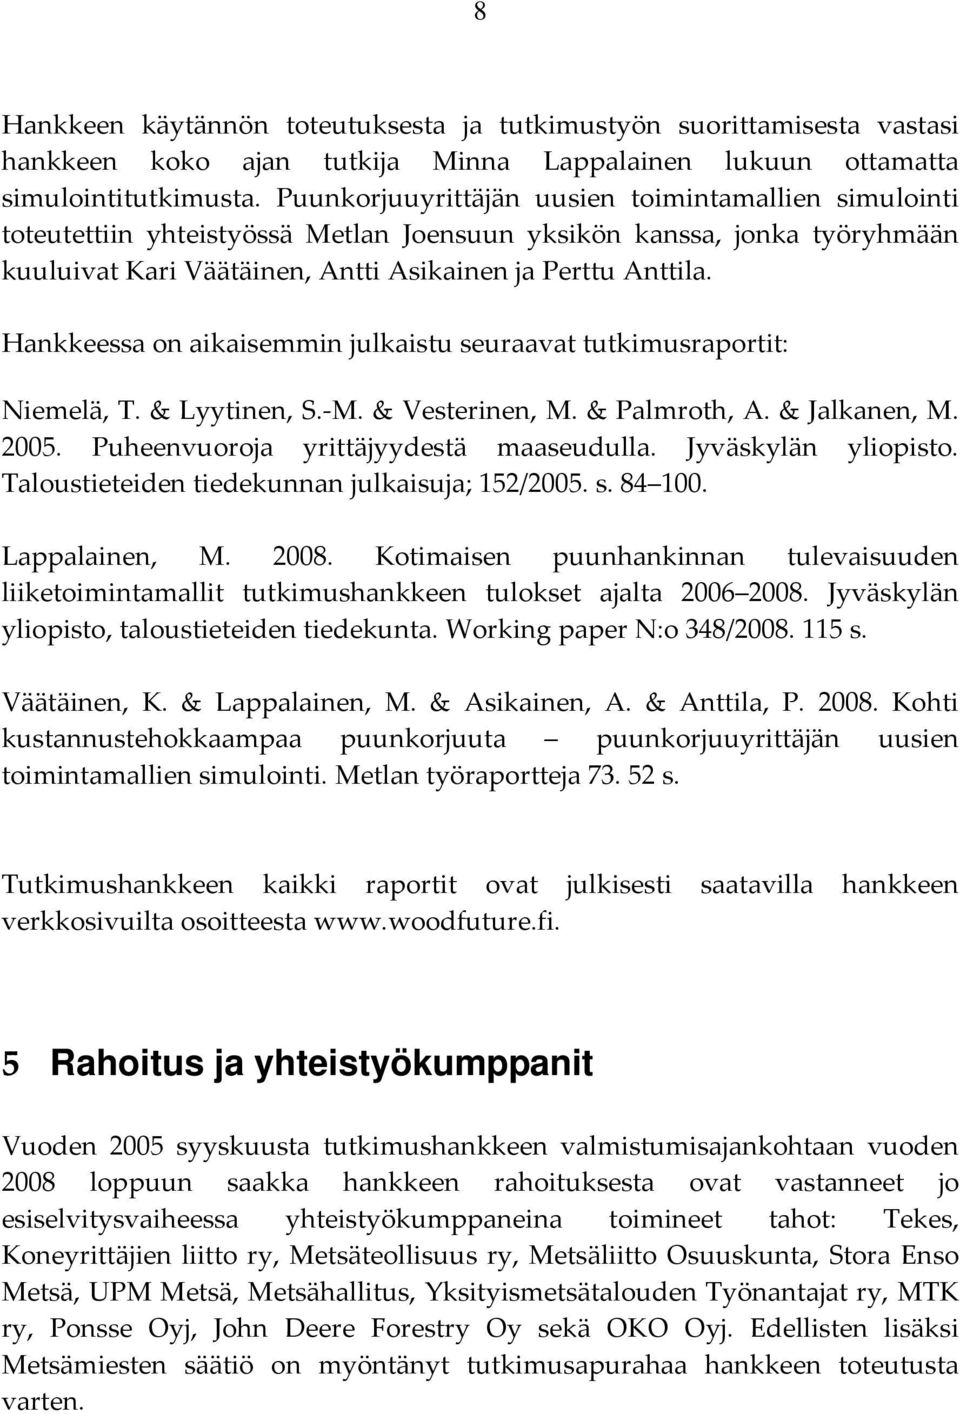 Hankkeessa on aikaisemmin julkaistu seuraavat tutkimusraportit: Niemelä, T. & Lyytinen, S. M. & Vesterinen, M. & Palmroth, A. & Jalkanen, M. 2005. Puheenvuoroja yrittäjyydestä maaseudulla.